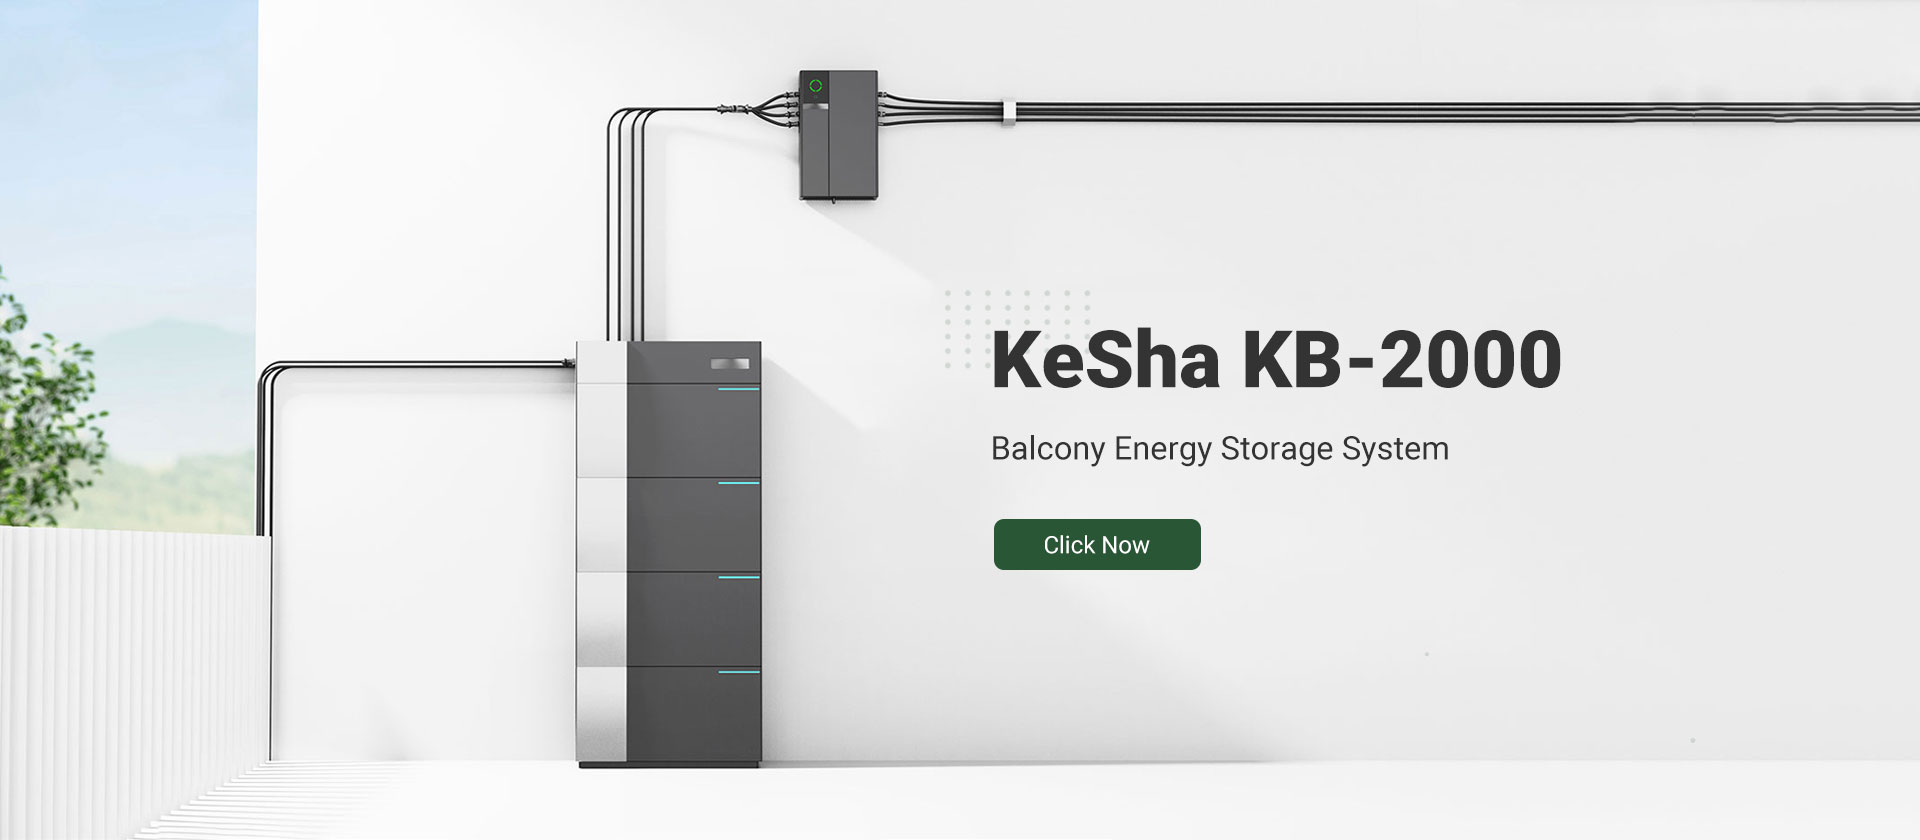 KeSha KB-2000